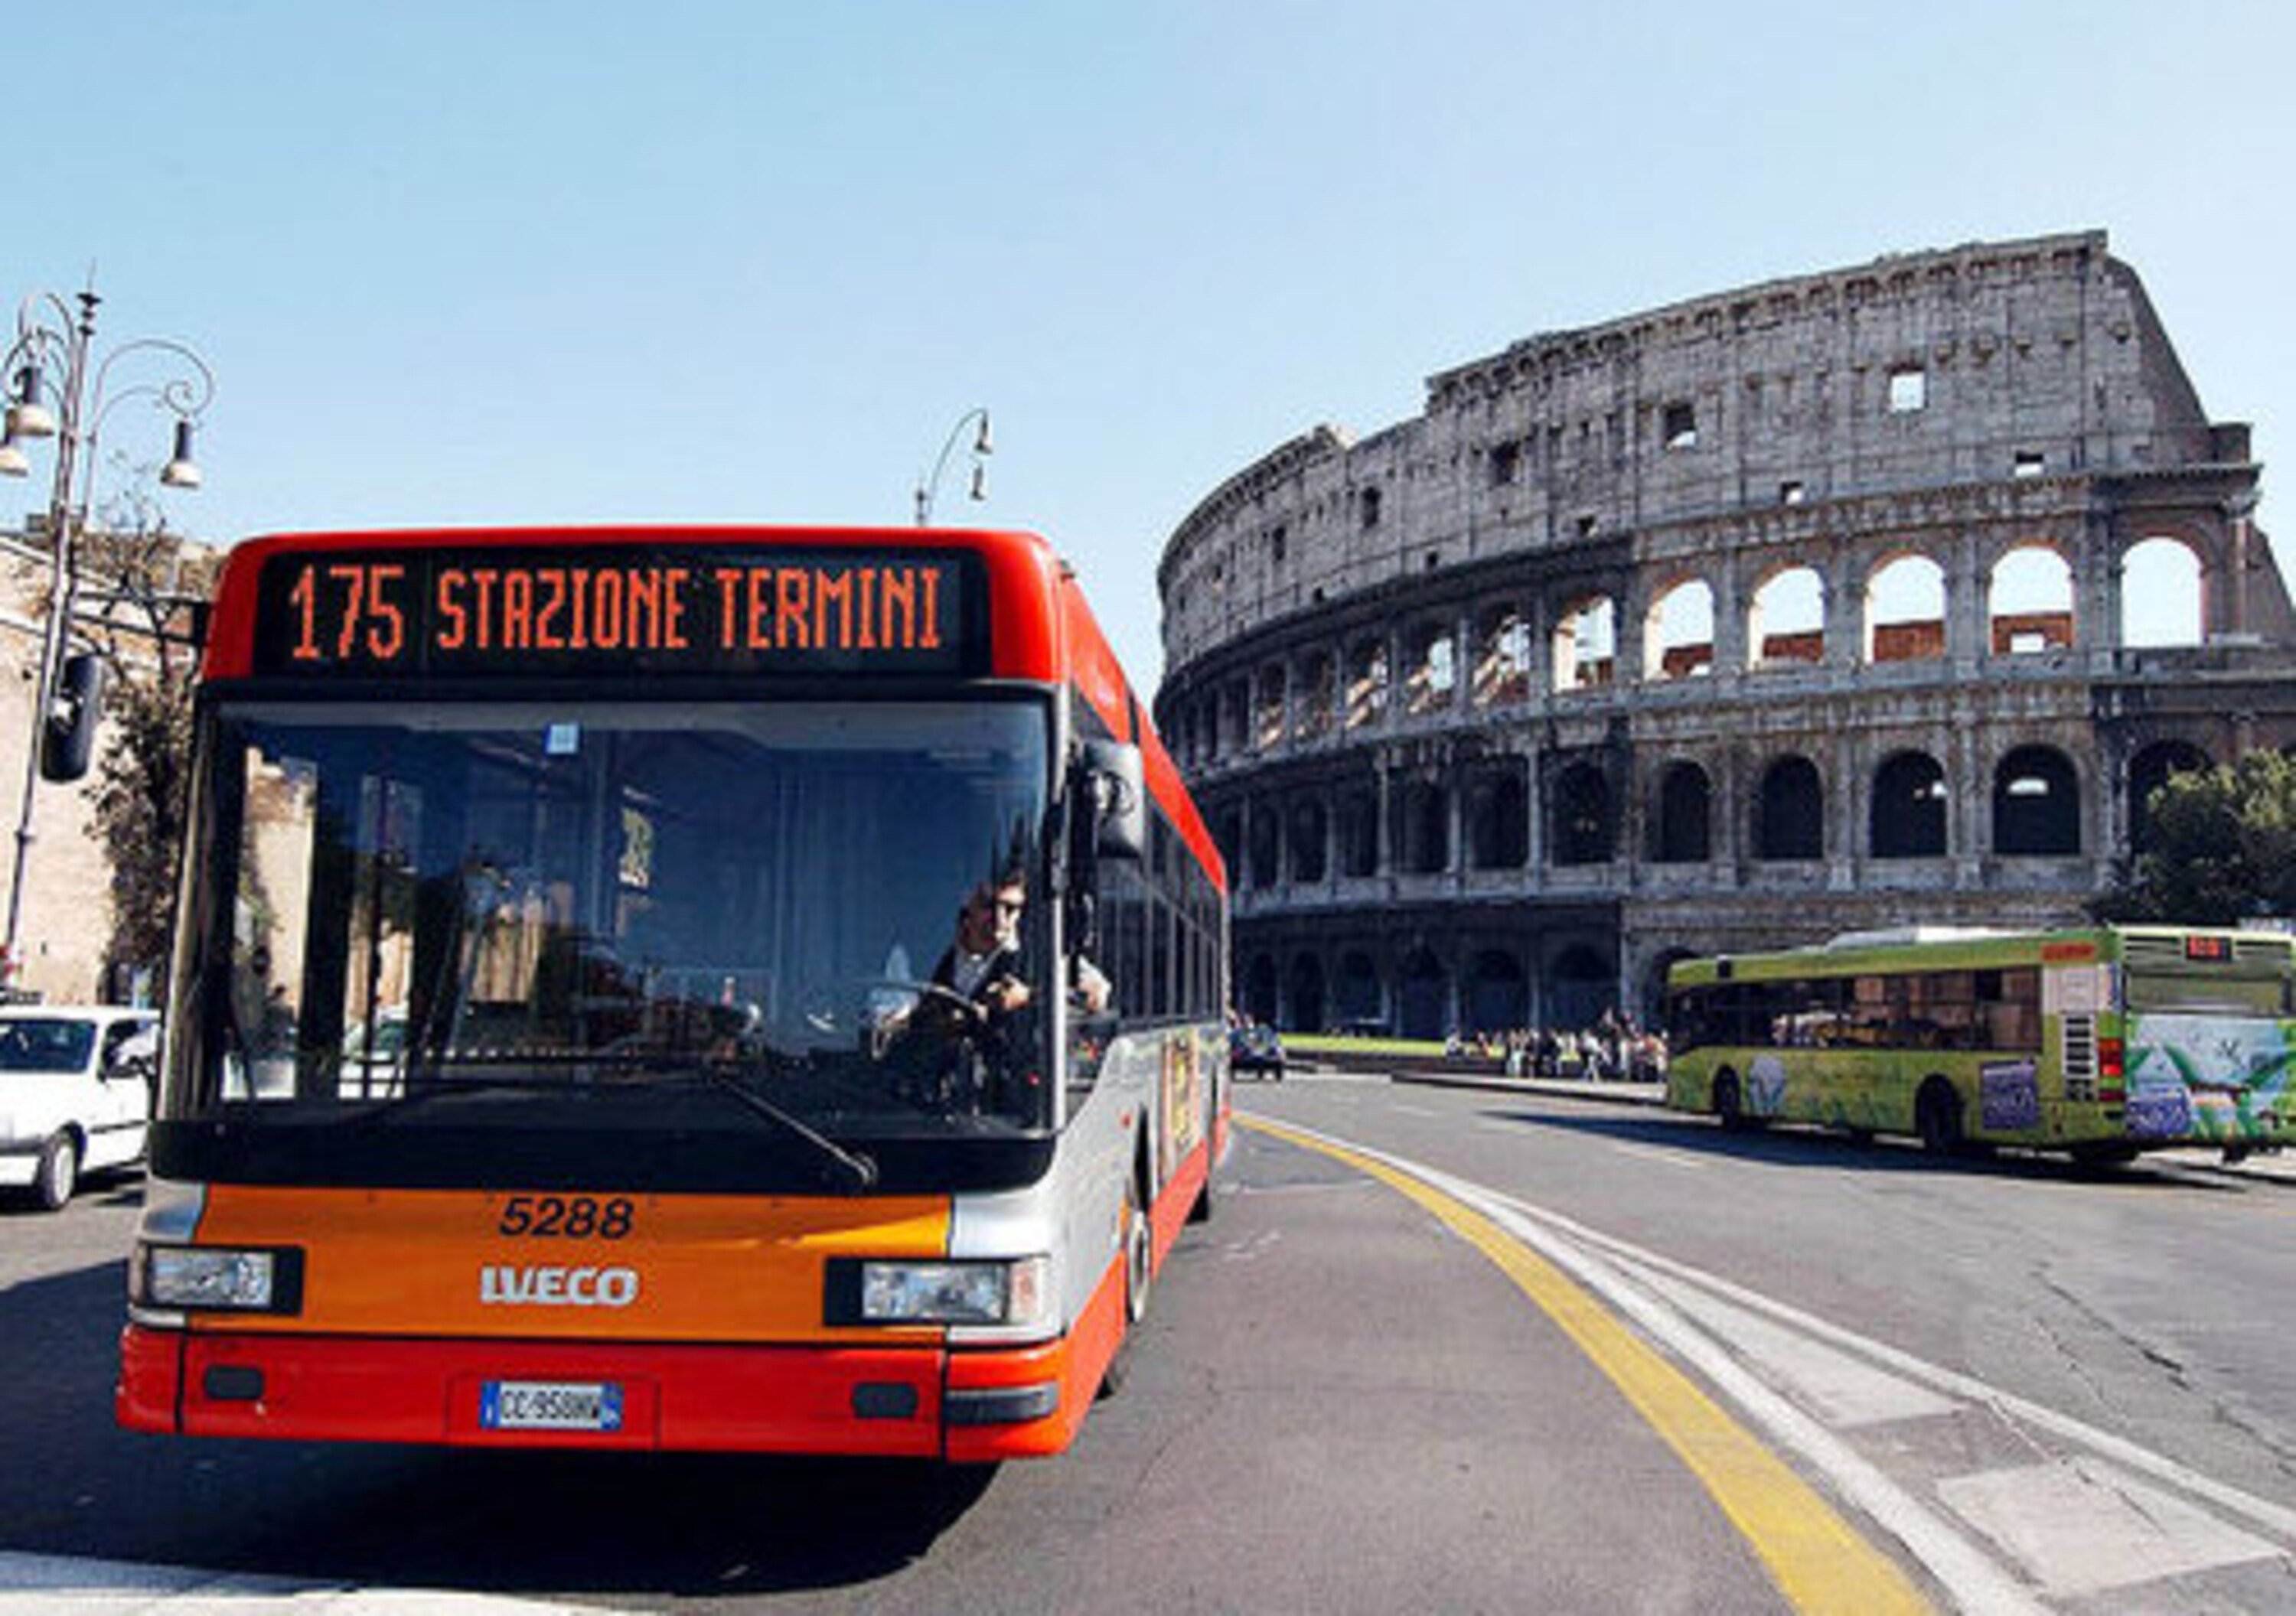 Roma: al via la seconda fase della riorganizzazione del trasporto pubblico